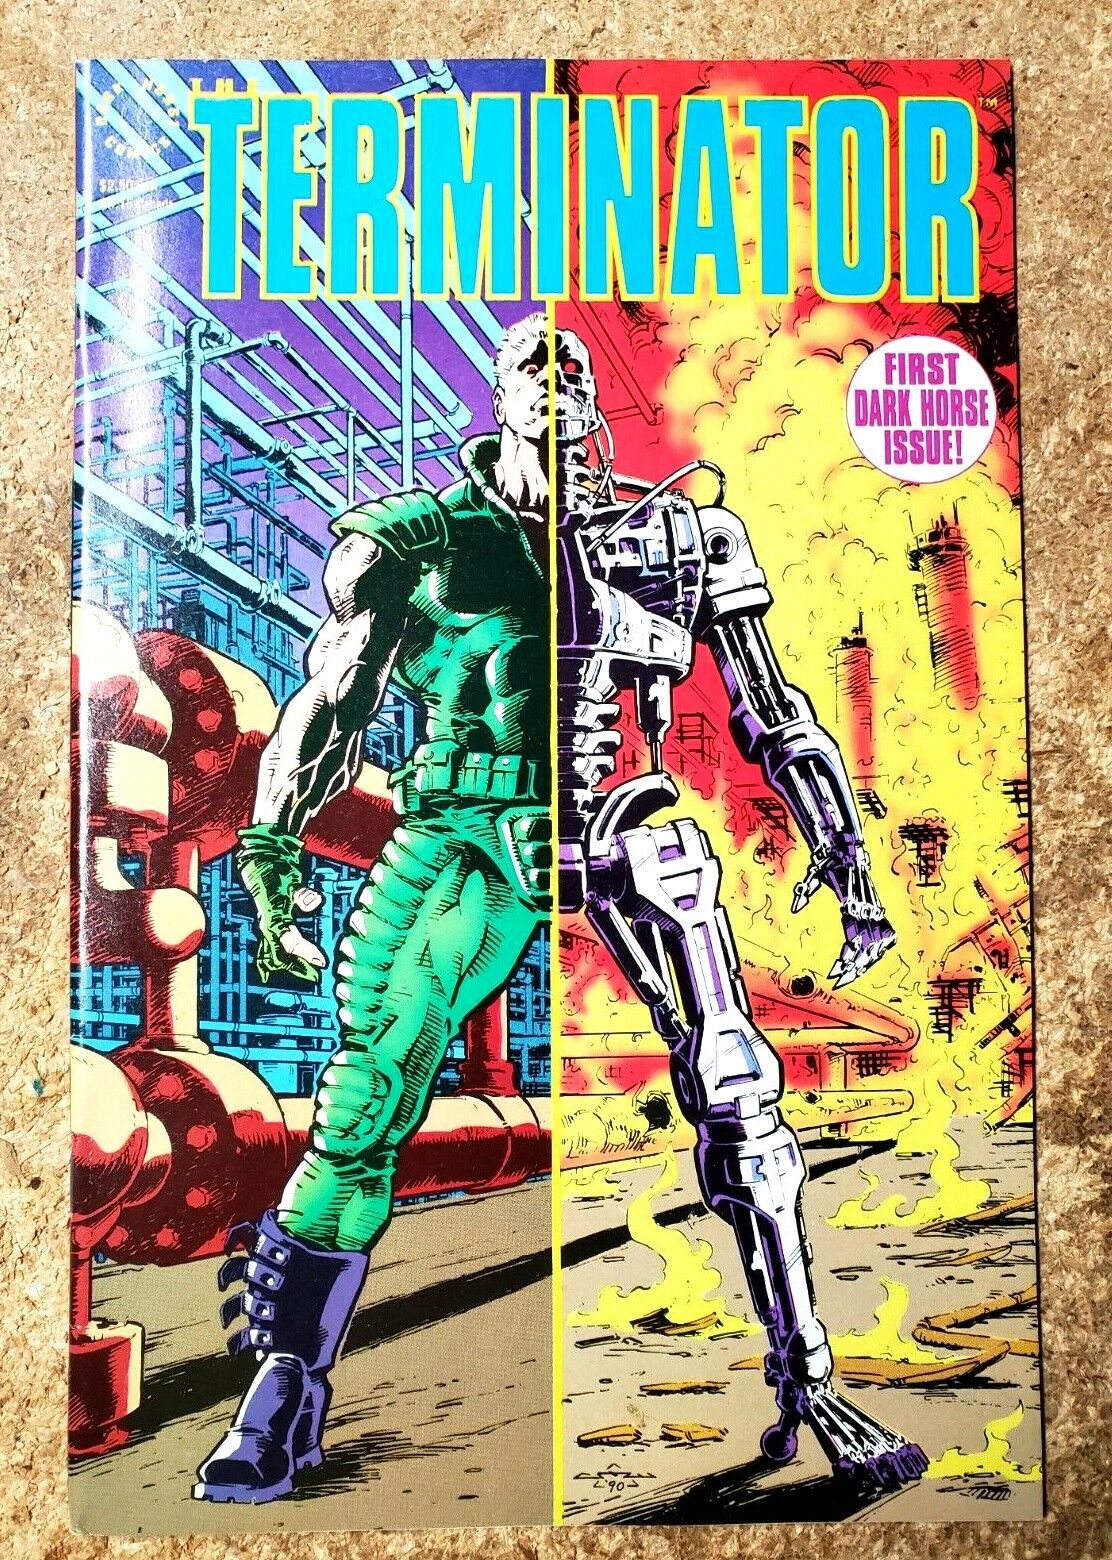 1990 Terminator:Tempest #1- First Dark Horse Issue- Warehouse Find- Unread